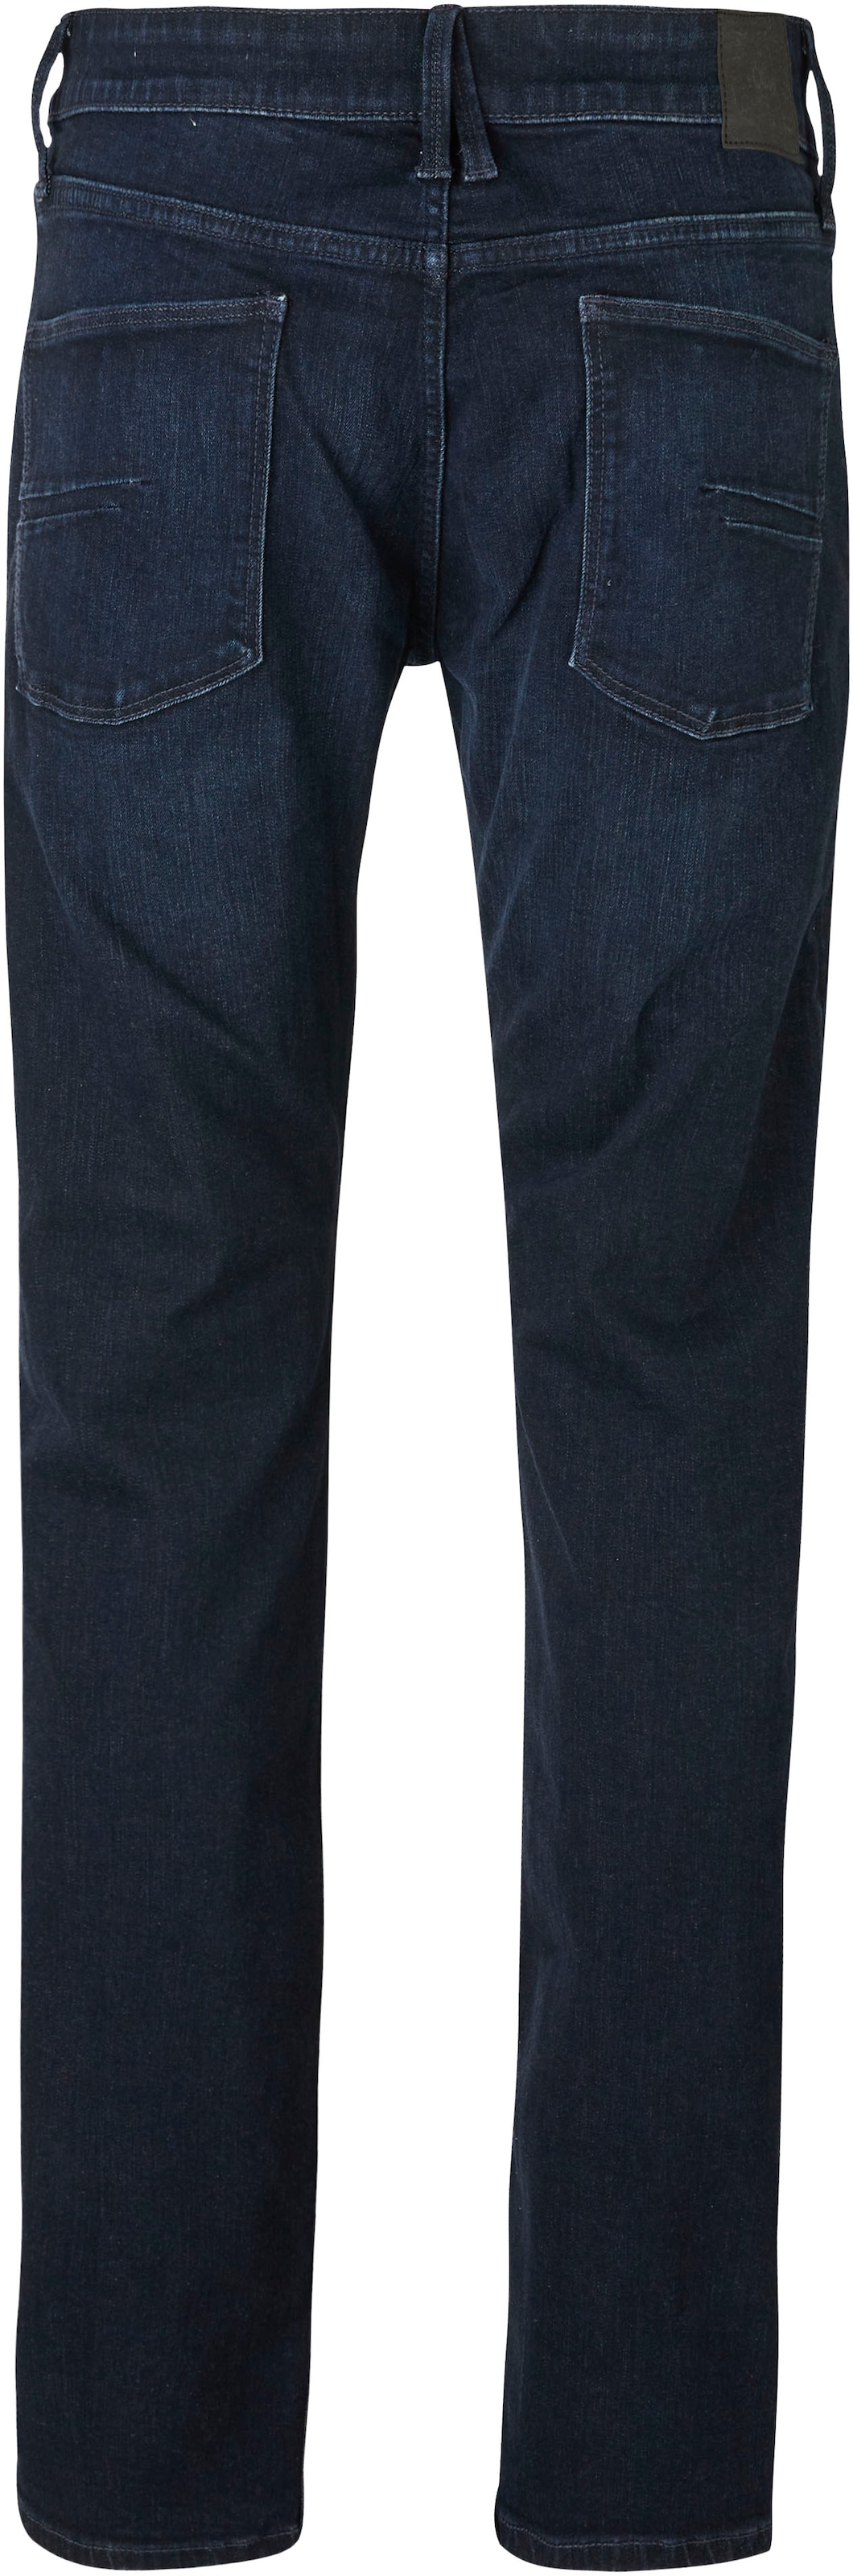 s.Oliver Bequeme Jeans, mit Gesäss- und Eingrifftaschen